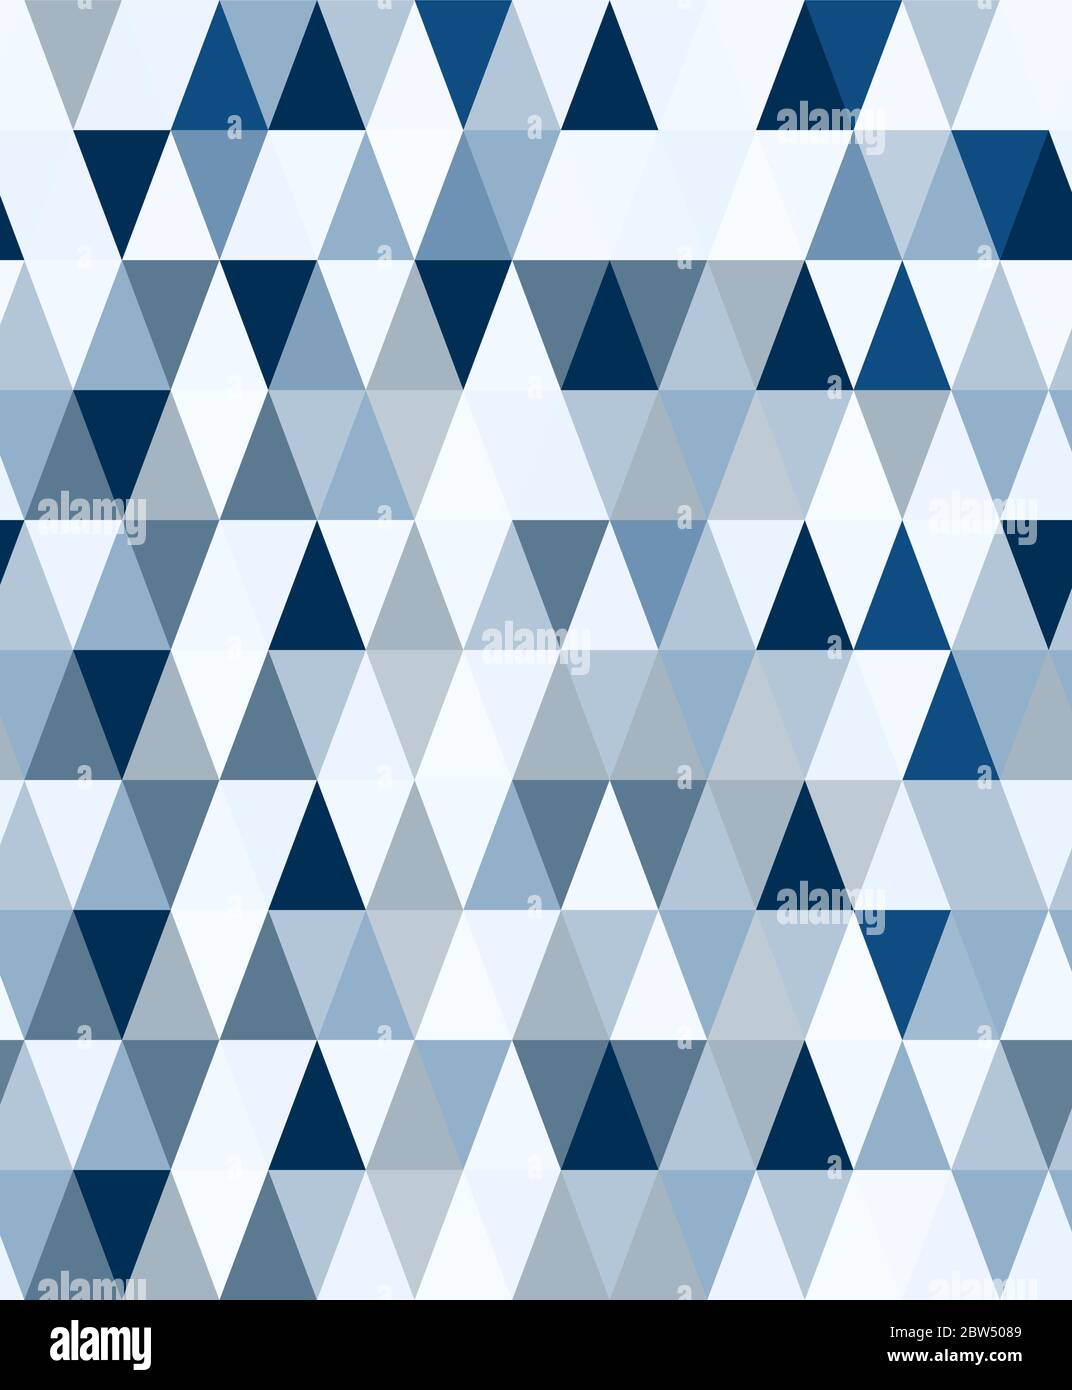 Moderne minimalistische geometrische nahtlose Muster mit Dreiecken in klassischen Blautönen gefärbt. Abstraktes geometrisches zeitgenössisches Vektormuster. Stock Vektor